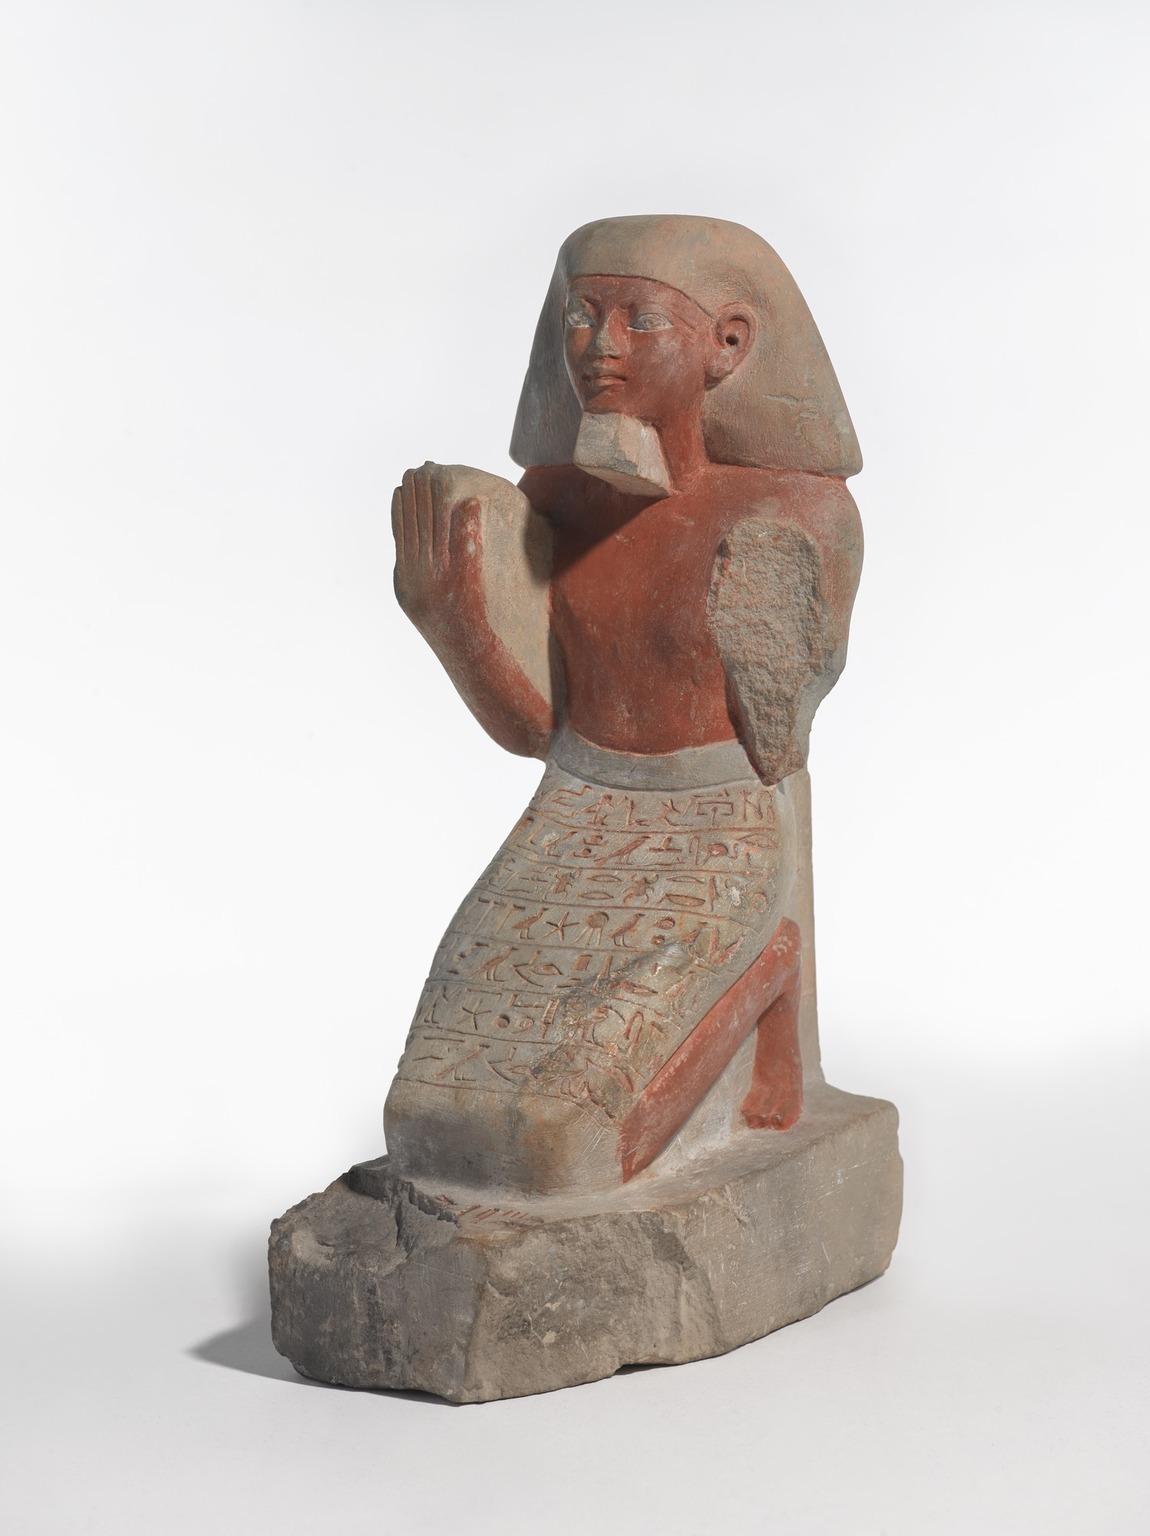 Любопытной Варваре на базаре нос оторвали, или Почему египетским статуям перекрывали дыхание? загадки,история,мир,слухи